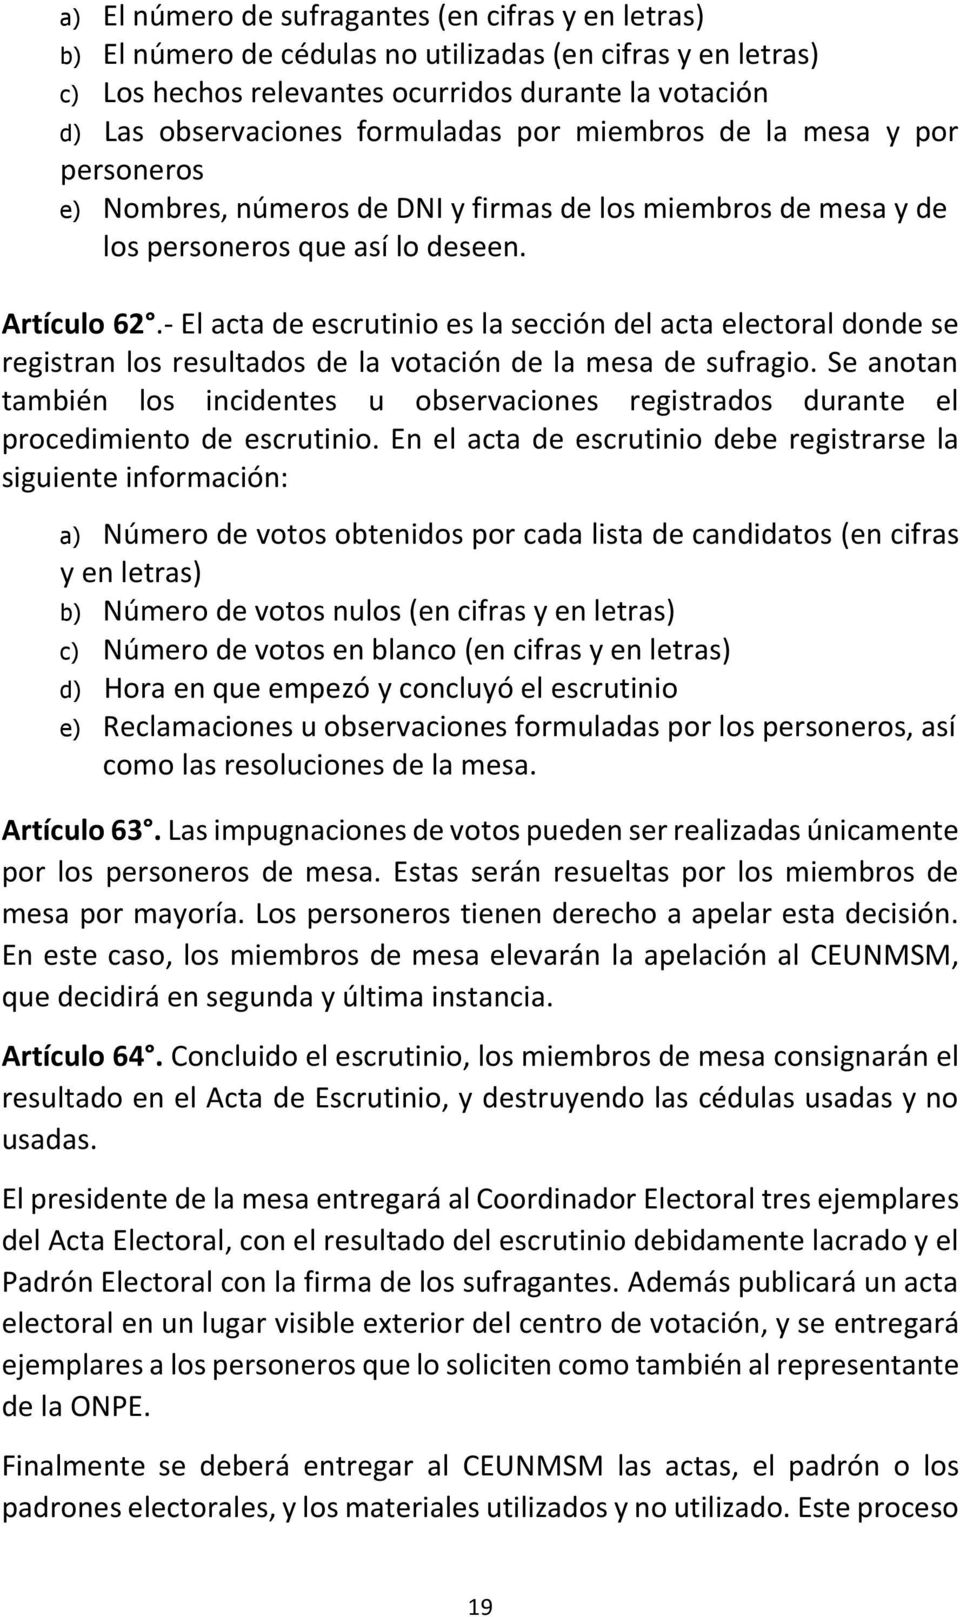 - El acta de escrutinio es la sección del acta electoral donde se registran los resultados de la votación de la mesa de sufragio.